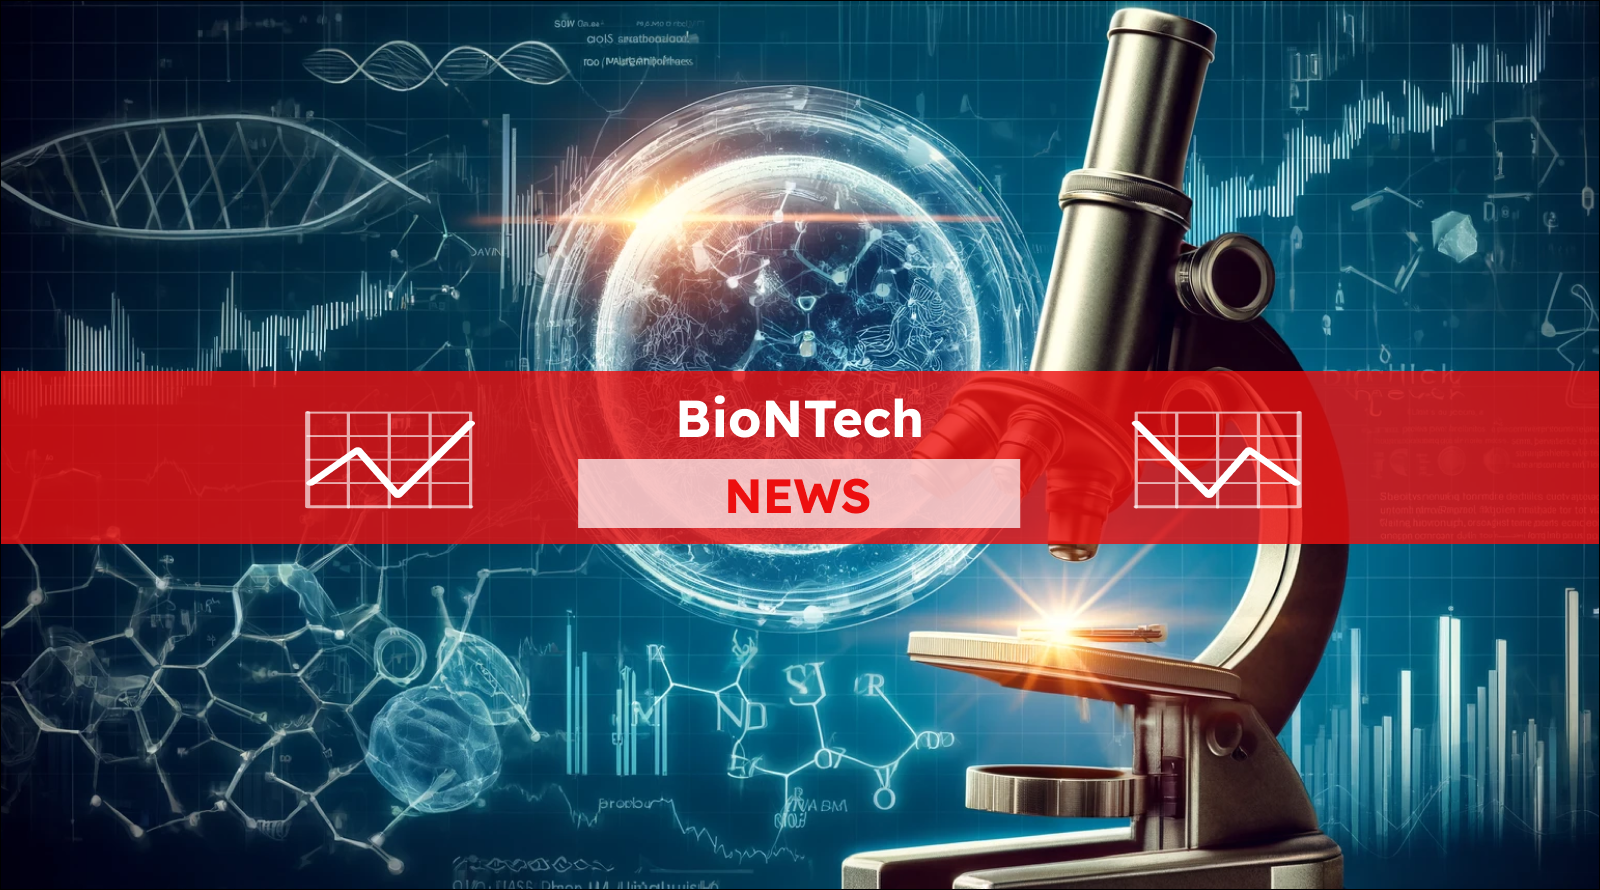 in Mikroskop mit einer visualisierten Zelle und DNA, umgeben von wissenschaftlichen Diagrammen auf einem blauen Hintergrund, mit einem BioNTech NEWS Banner